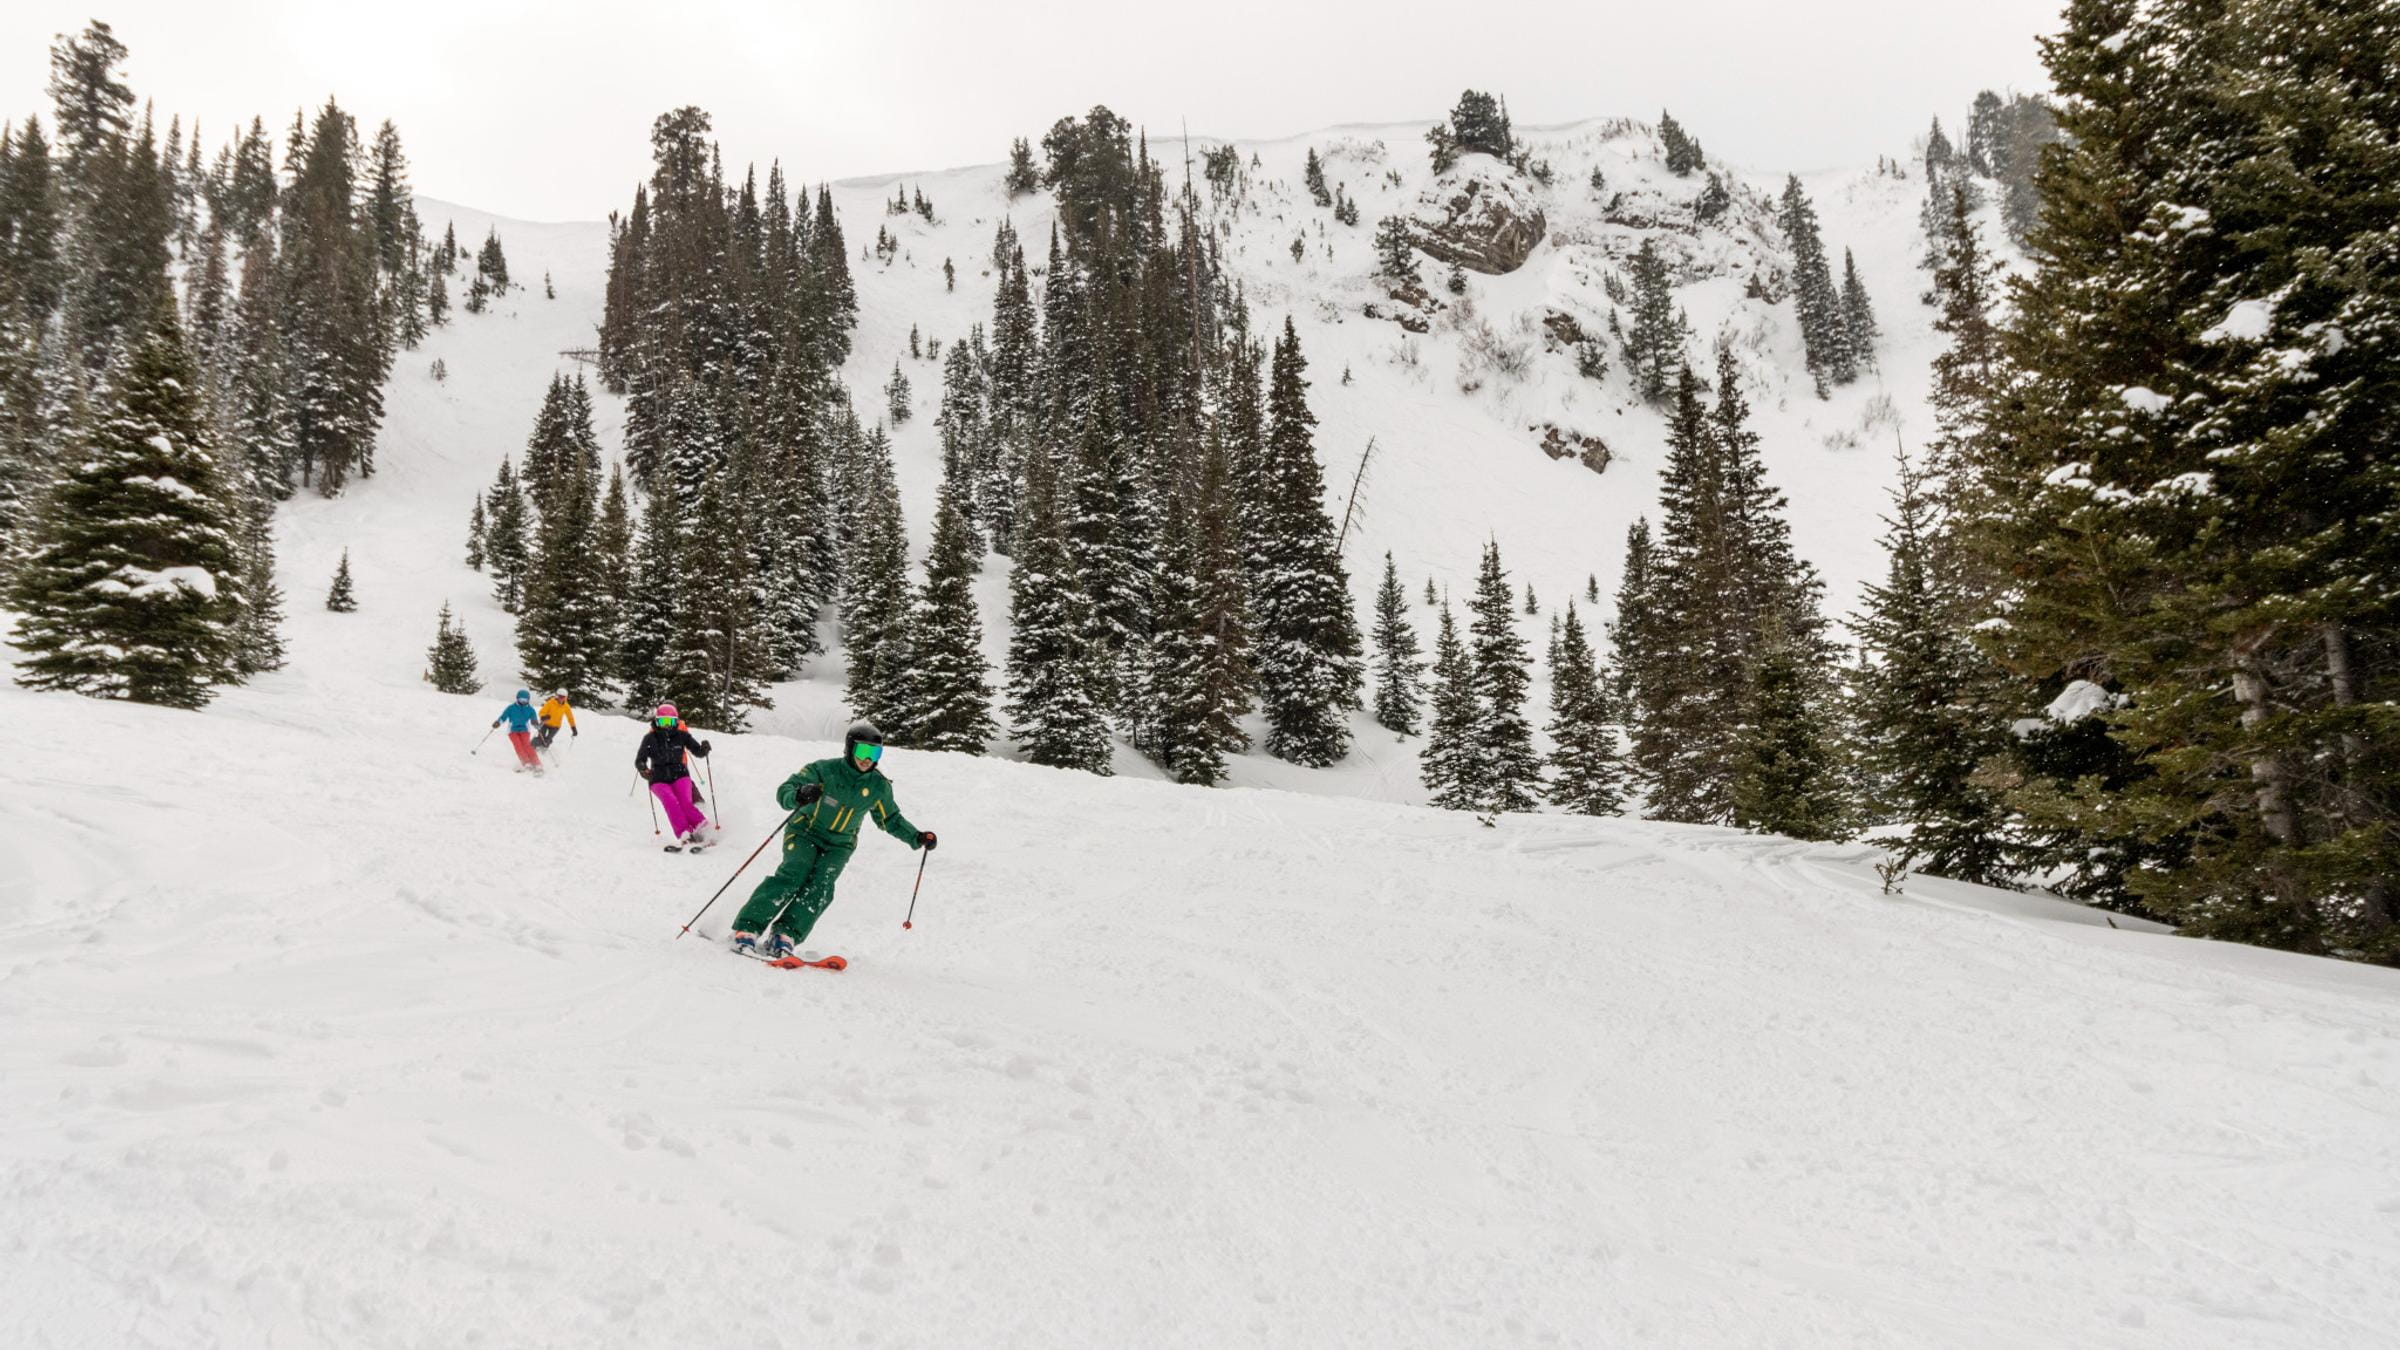 Ski School | Ski Lessons - Three Day Women's Ski Clinic